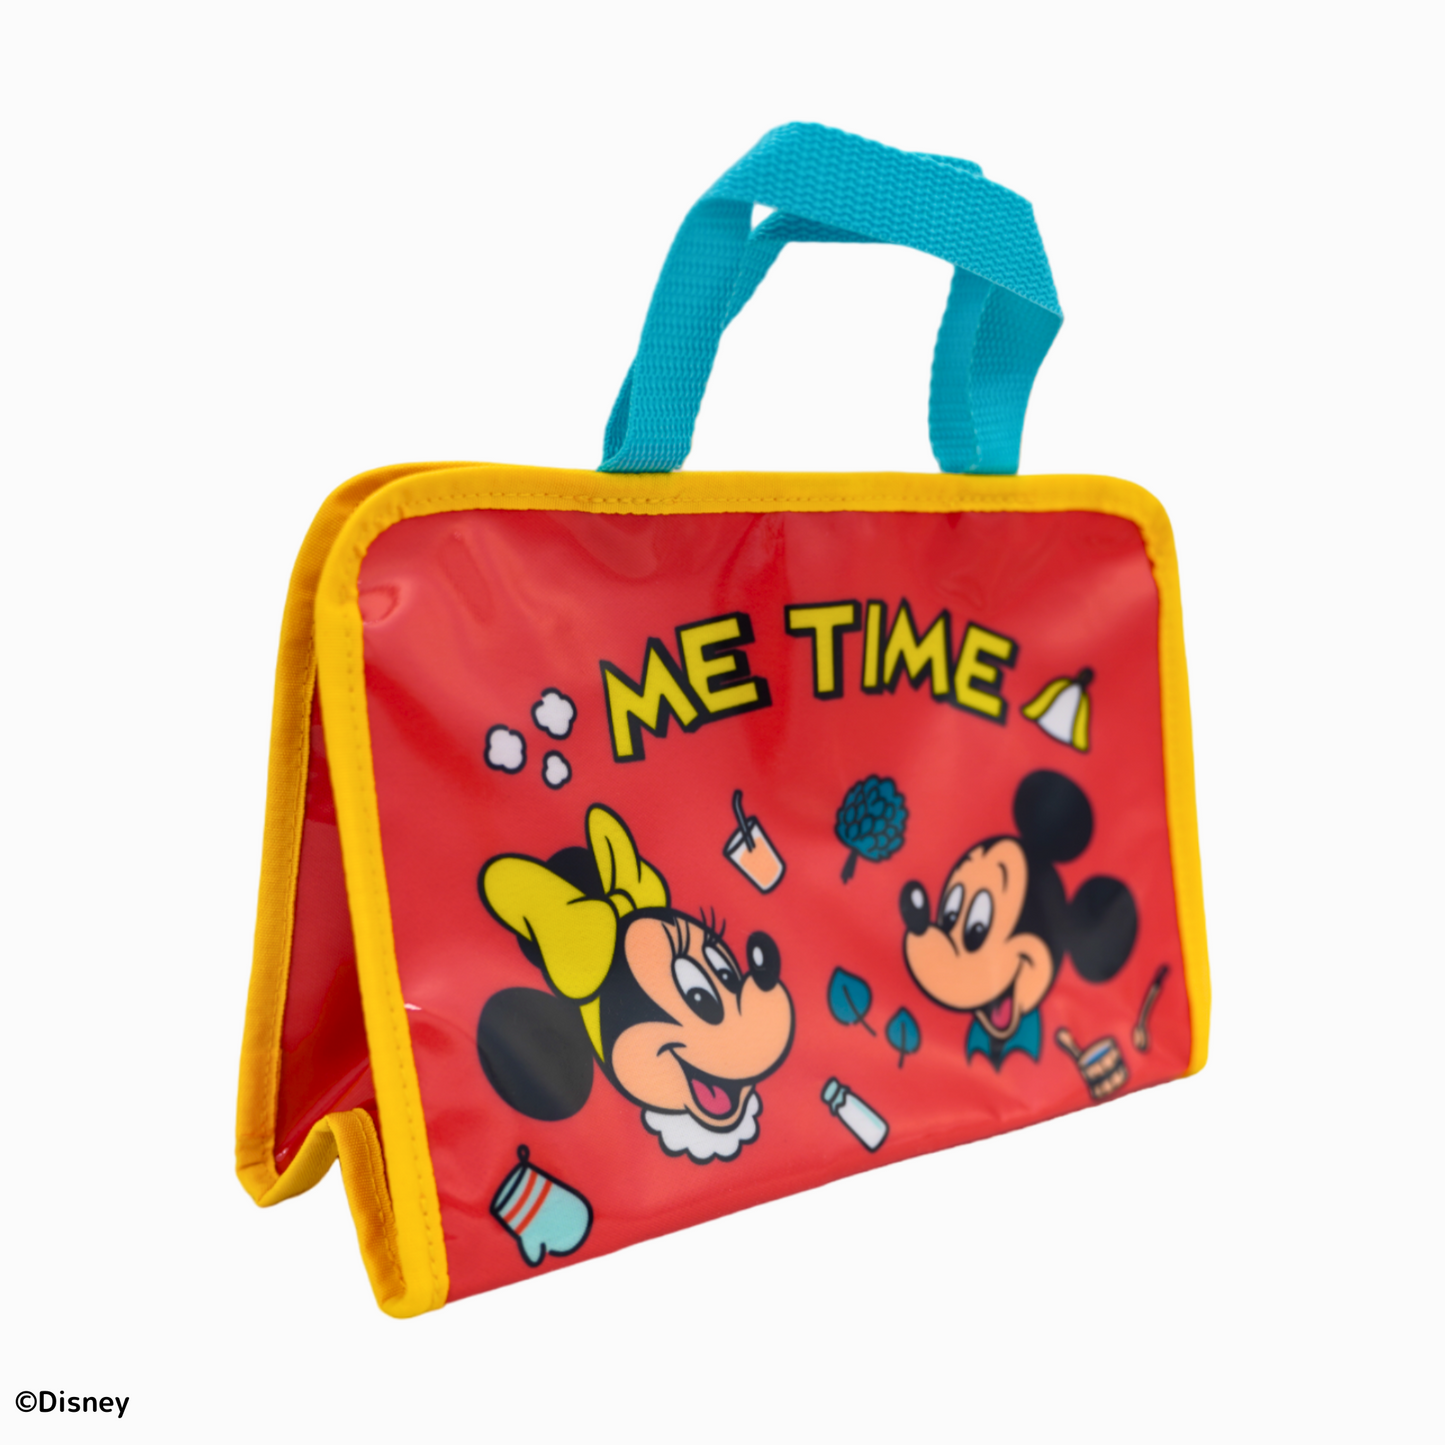 ディズニー スパバッグ Disney - ME TIME